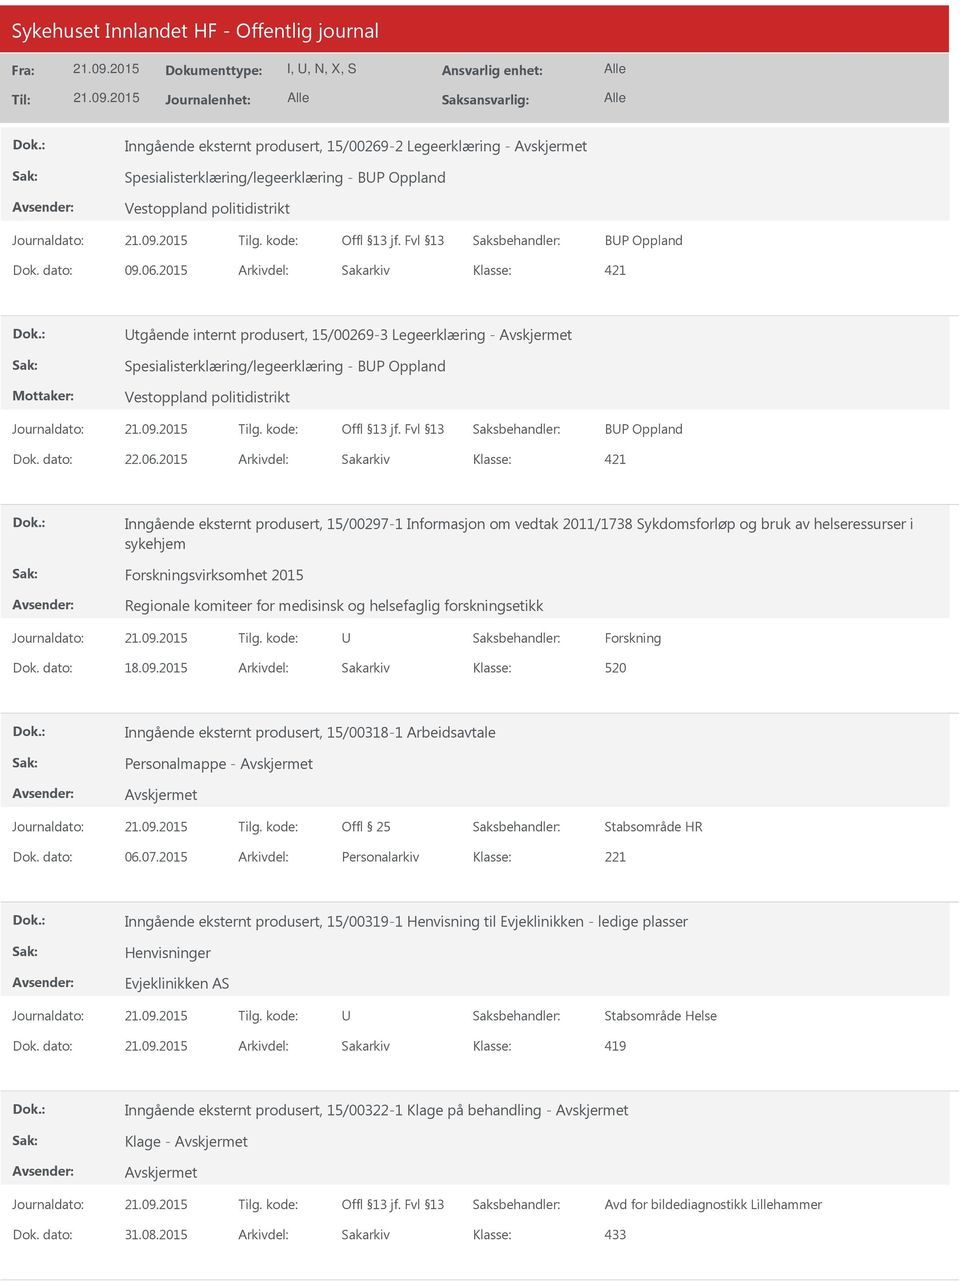 2015 Arkivdel: Sakarkiv 421 Inngående eksternt produsert, 15/00297-1 Informasjon om vedtak 2011/1738 Sykdomsforløp og bruk av helseressurser i sykehjem Forskningsvirksomhet 2015 Regionale komiteer